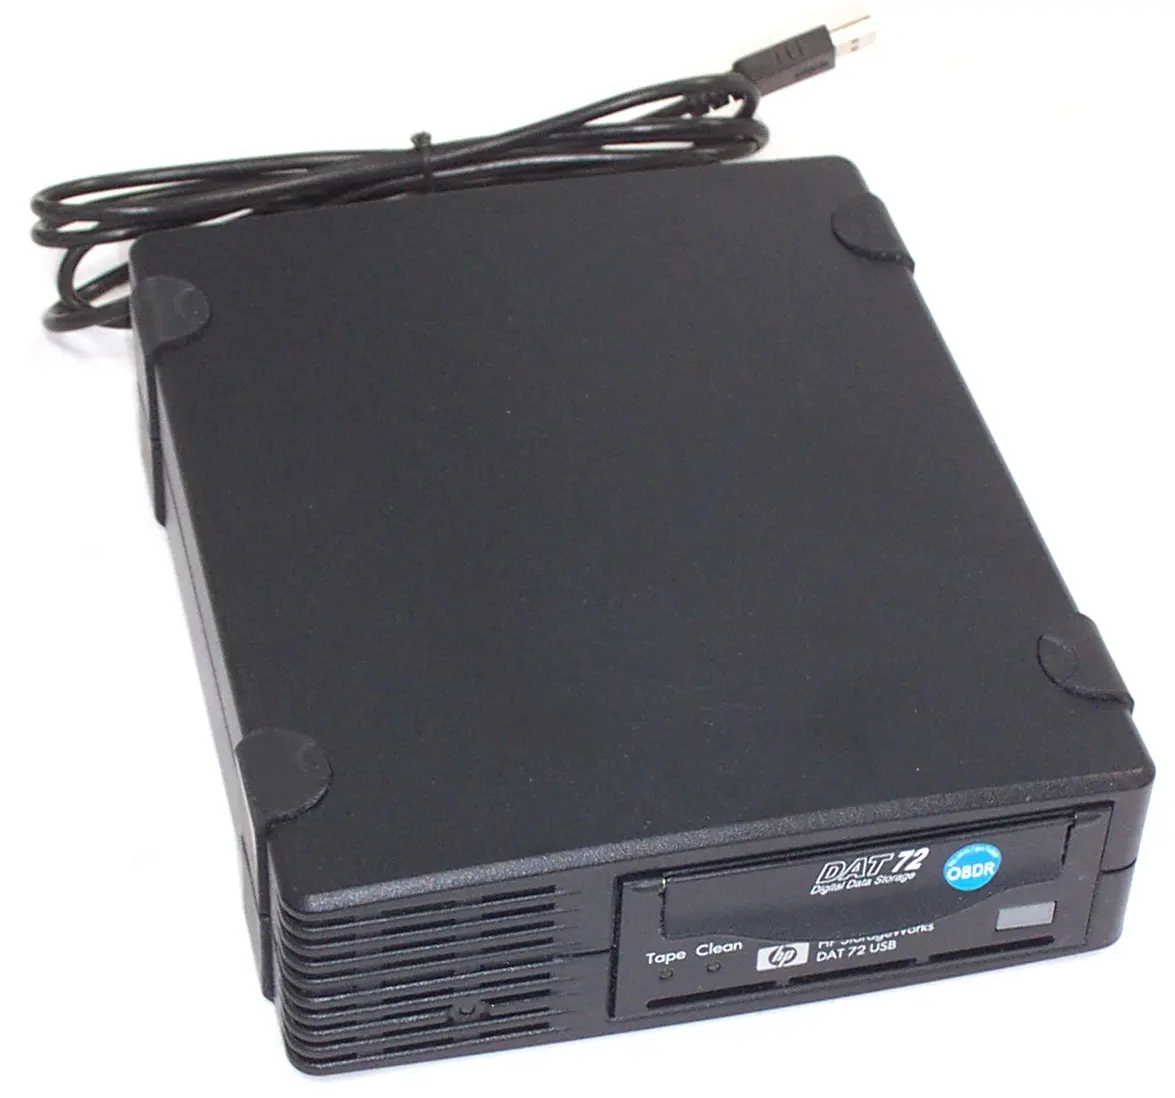 DW027A#AKD HP 36GB/72GB DDS-4 Hi-Speed USB 5.25-inch External Tape Drive